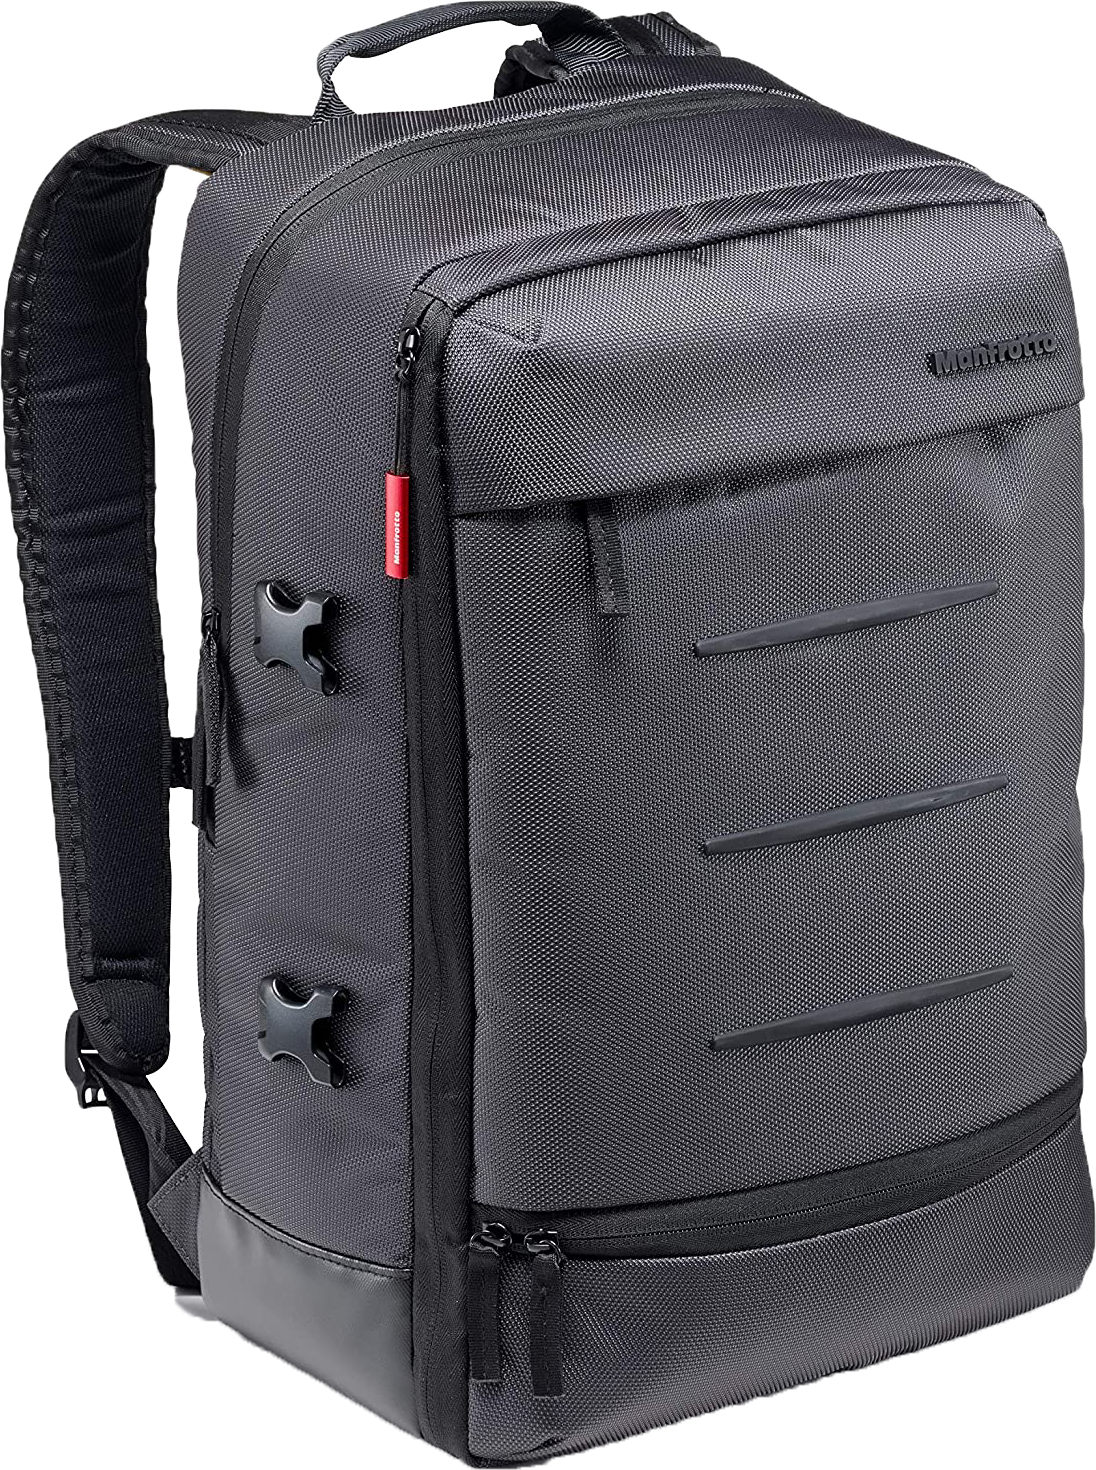 Business Backpack Download Transparent PNG Image